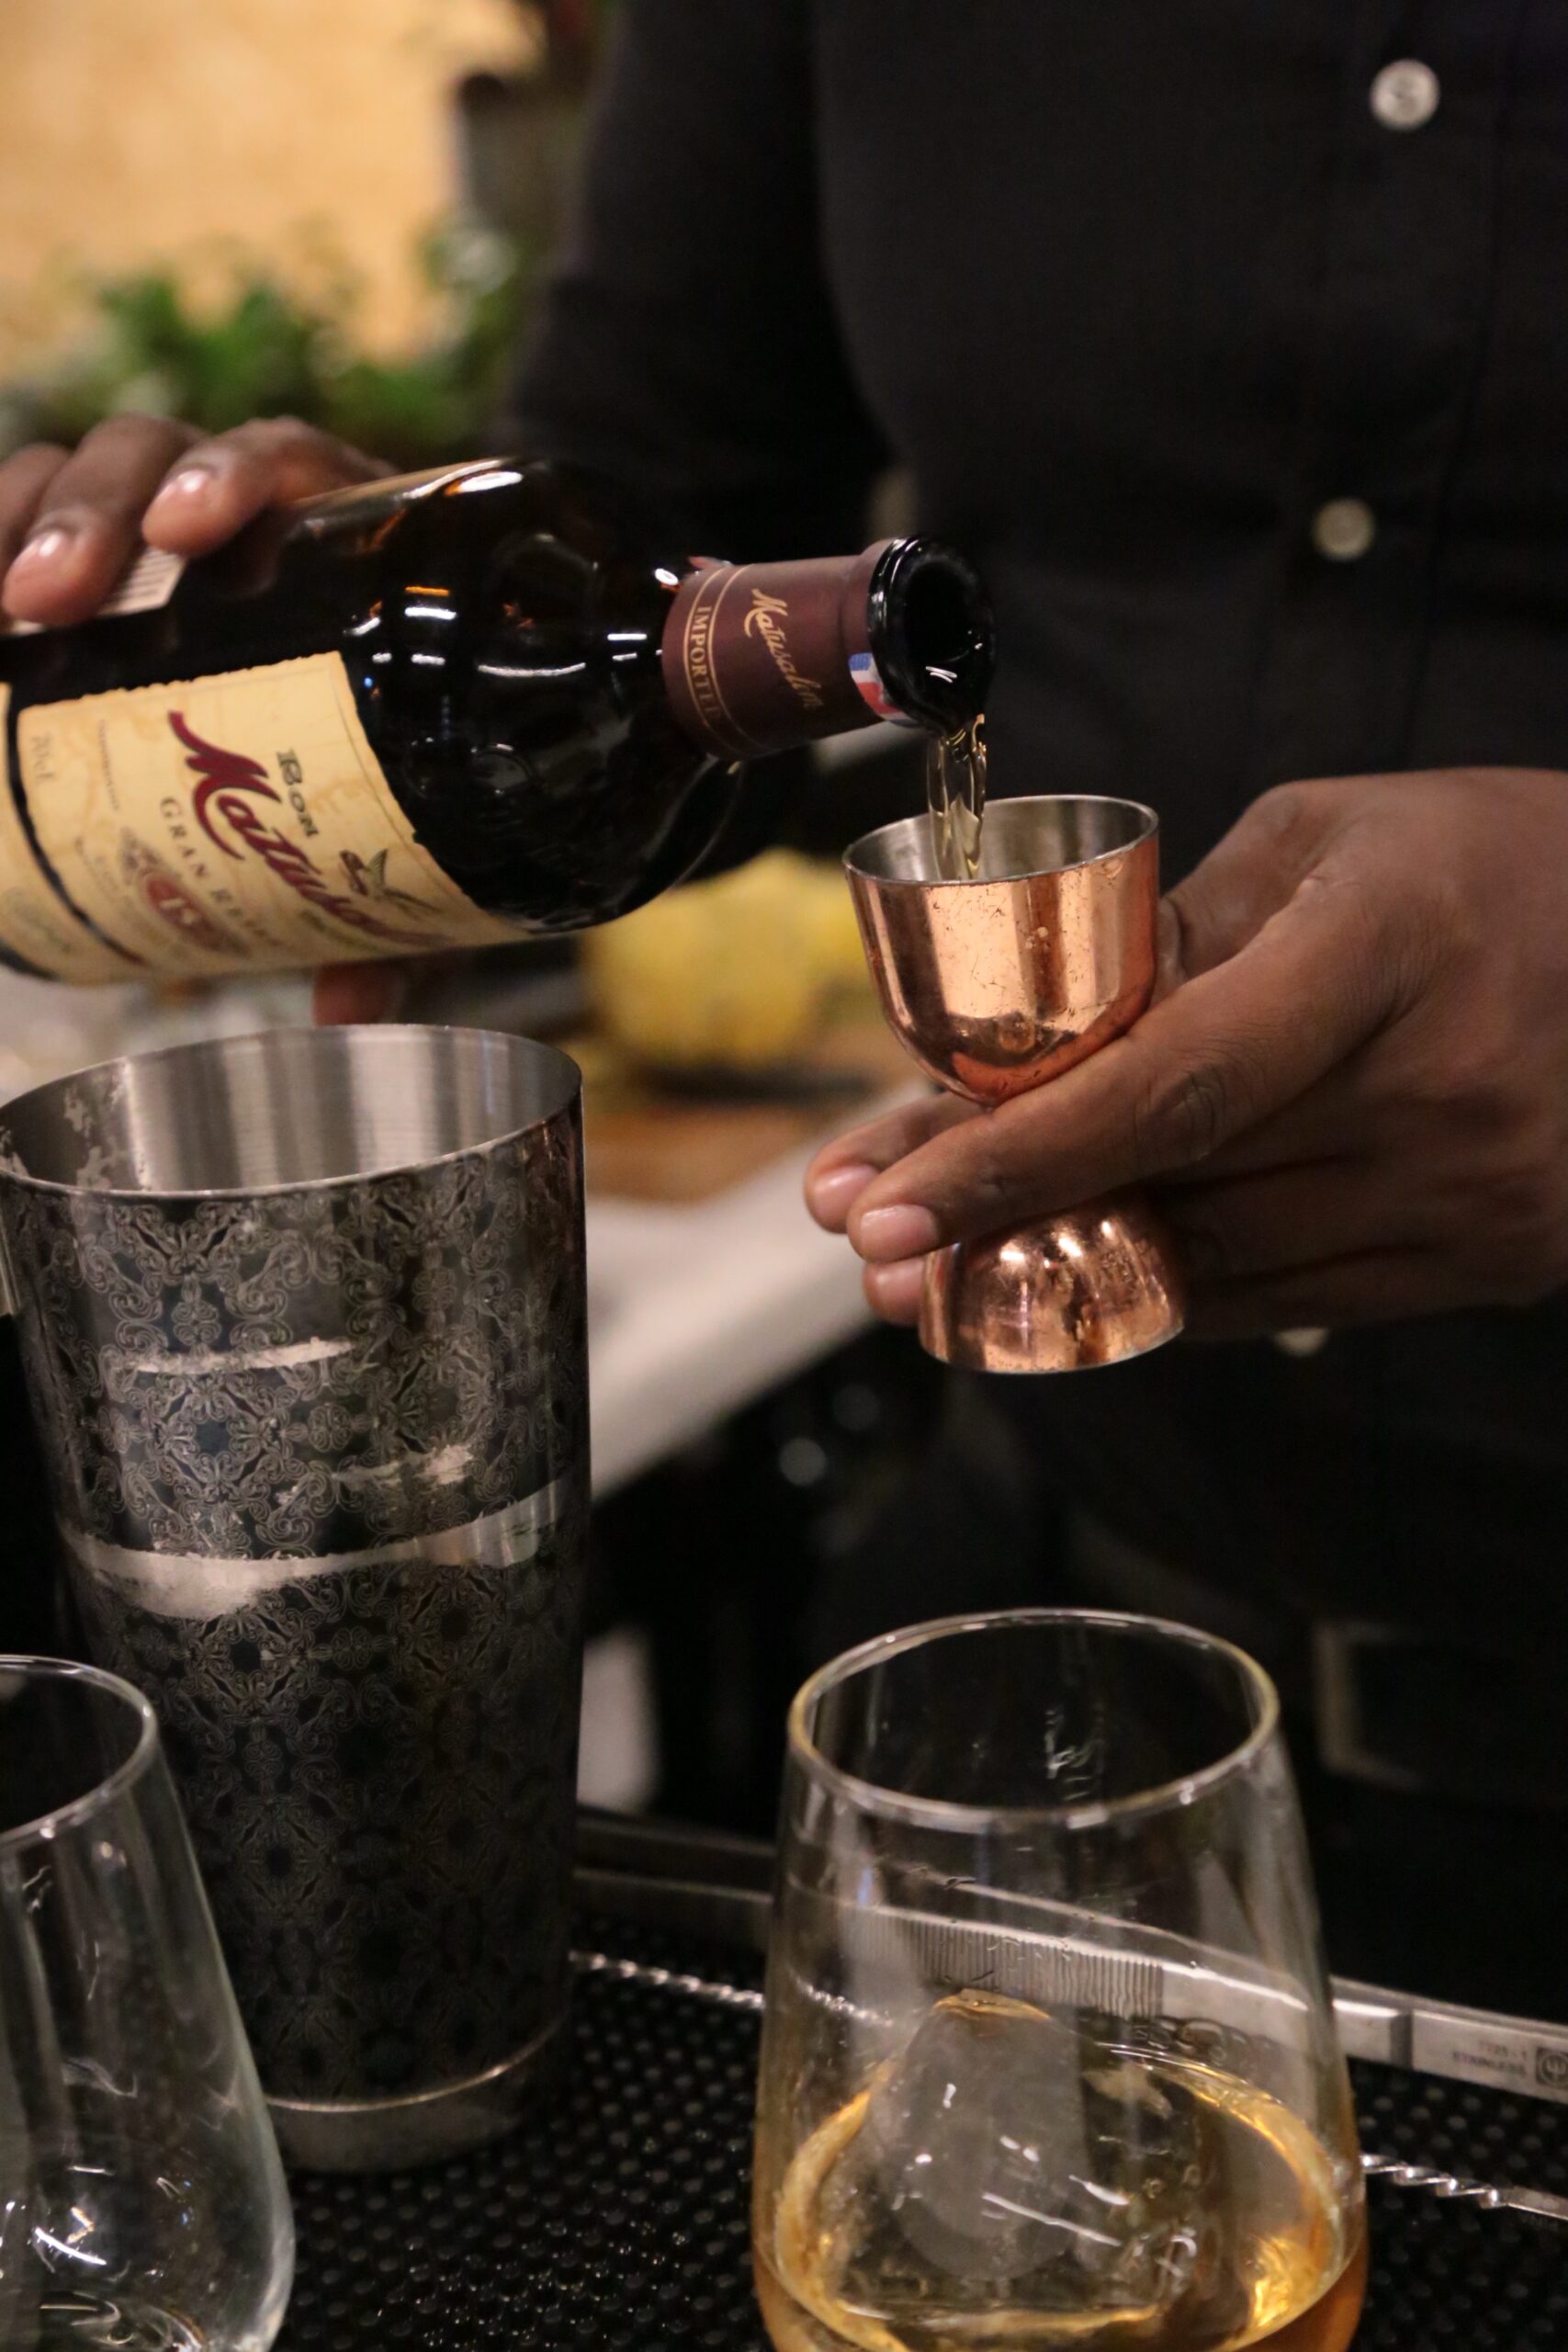 "Sherry Night" de Sembra celebró la grandeza del vino de jerez en RD